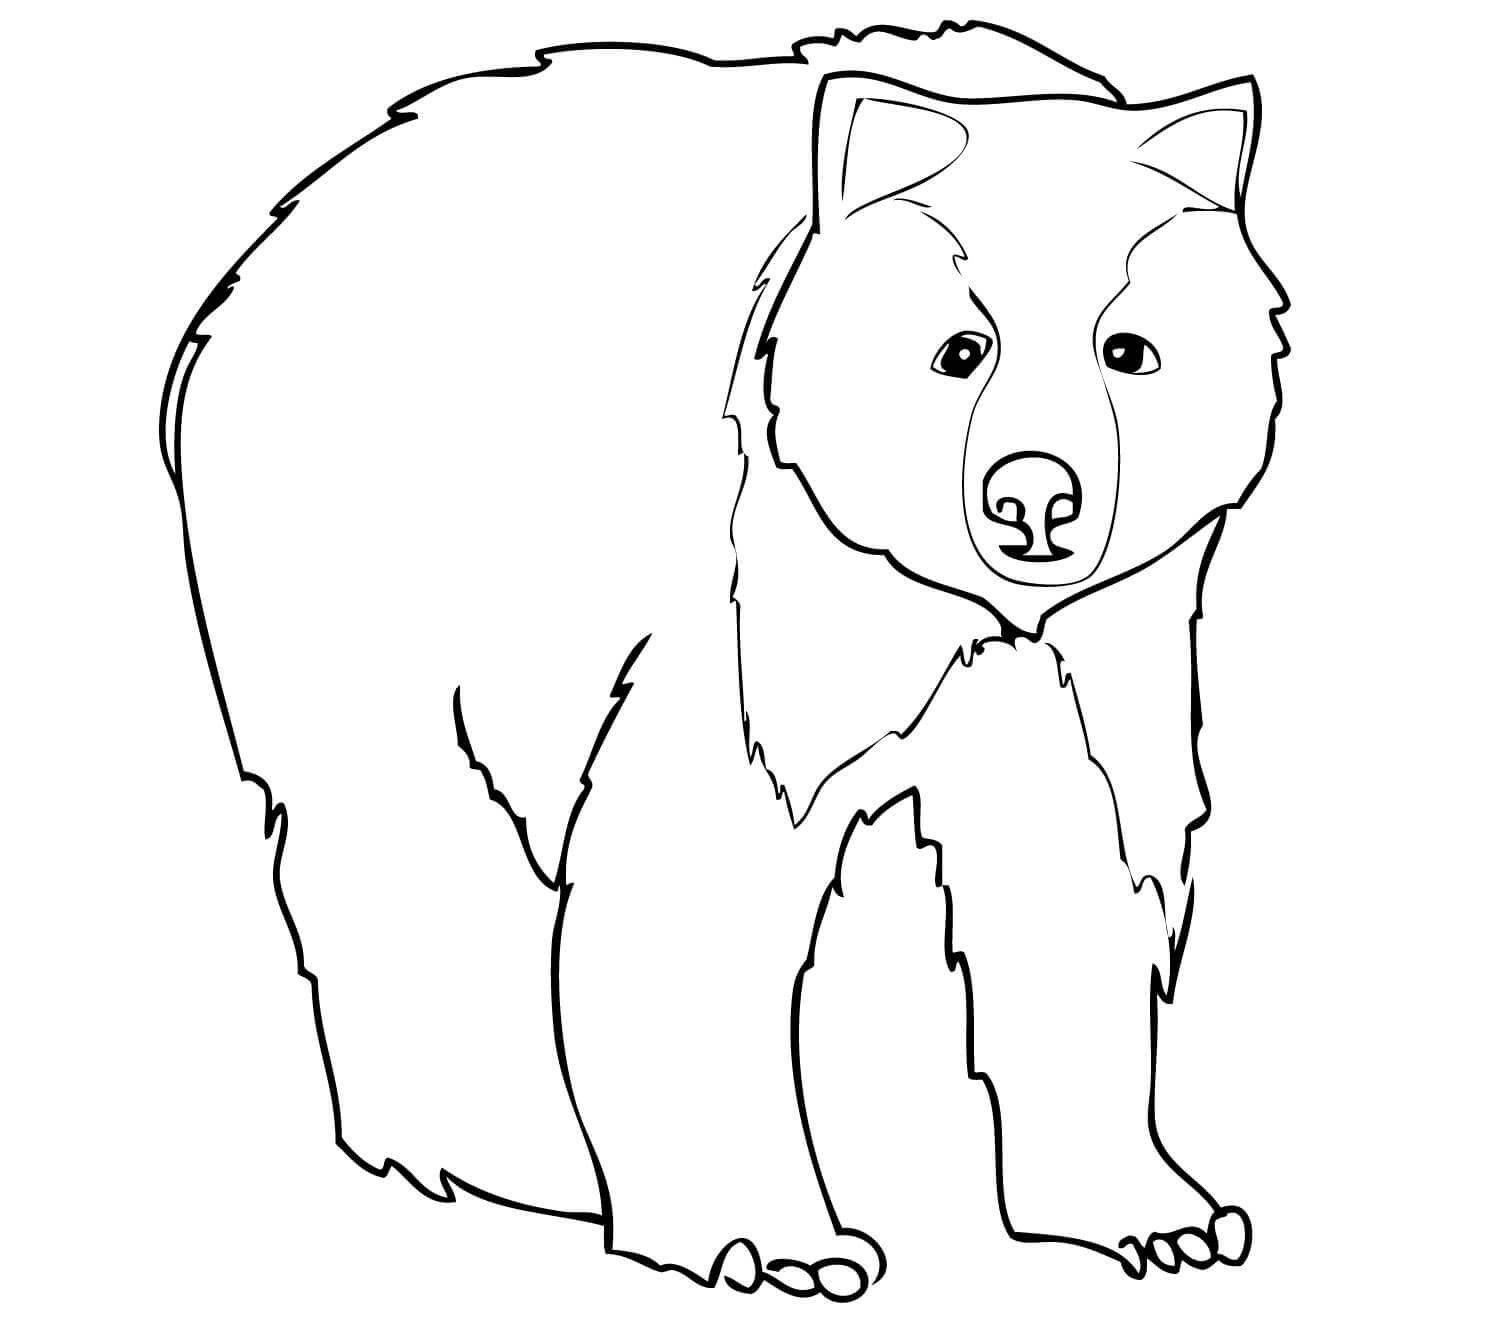 小灰熊简笔画画法